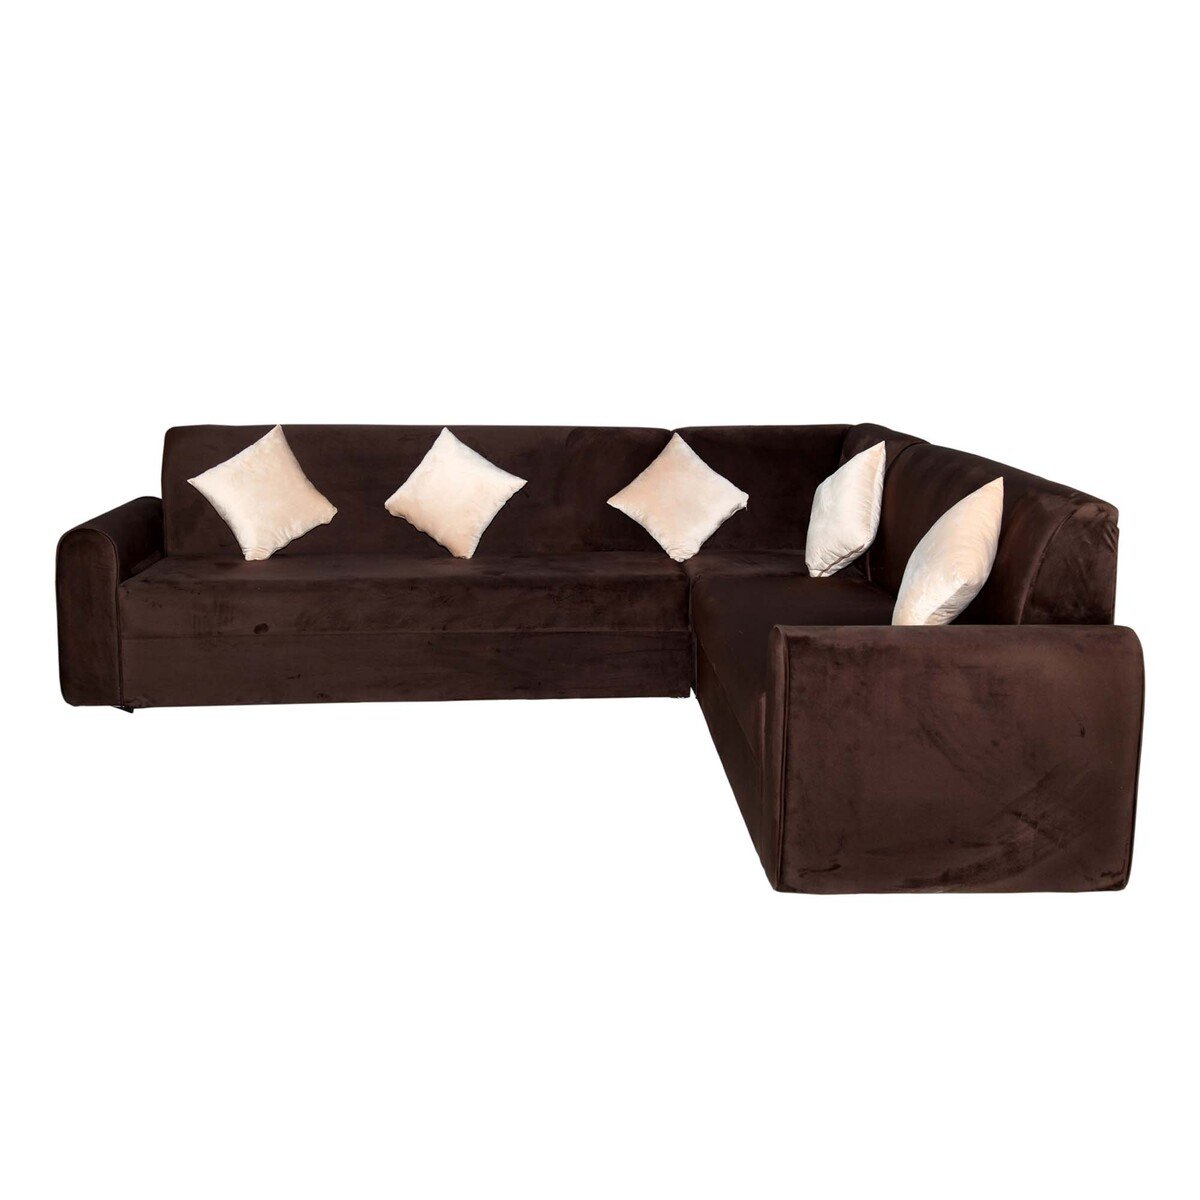 Design Plus Fabric Corner Sofa Set 280x190cm DP02 Brown